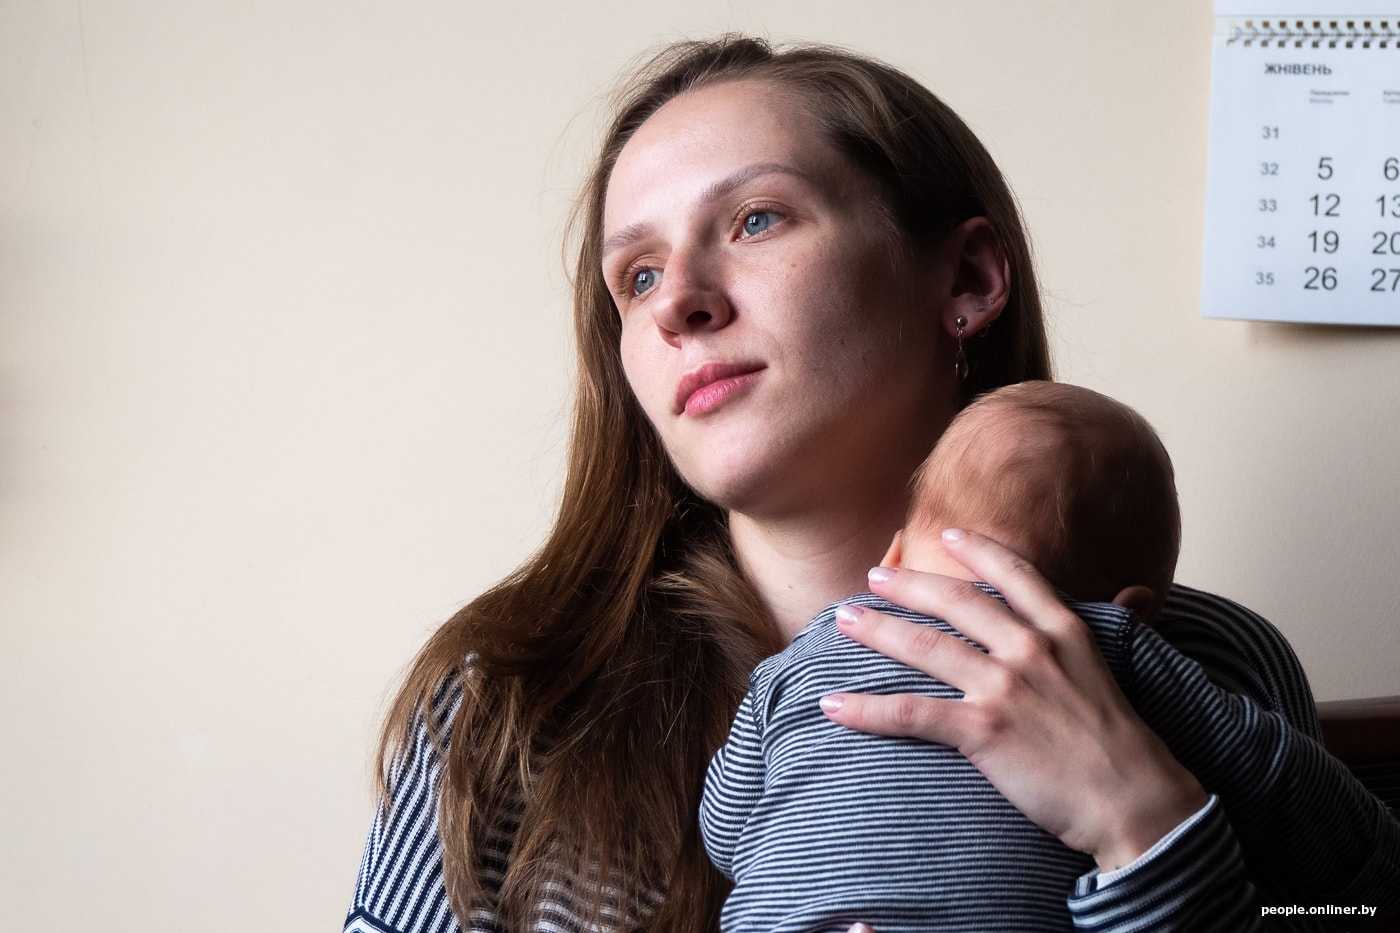 Мама четверых детей Елена Борисова в эксклюзивном интервью для сайта  рассказала о воспитании, семейных традициях, любимых местах в Украине, ответила на самые важные вопросы, актуальные для современных родителей